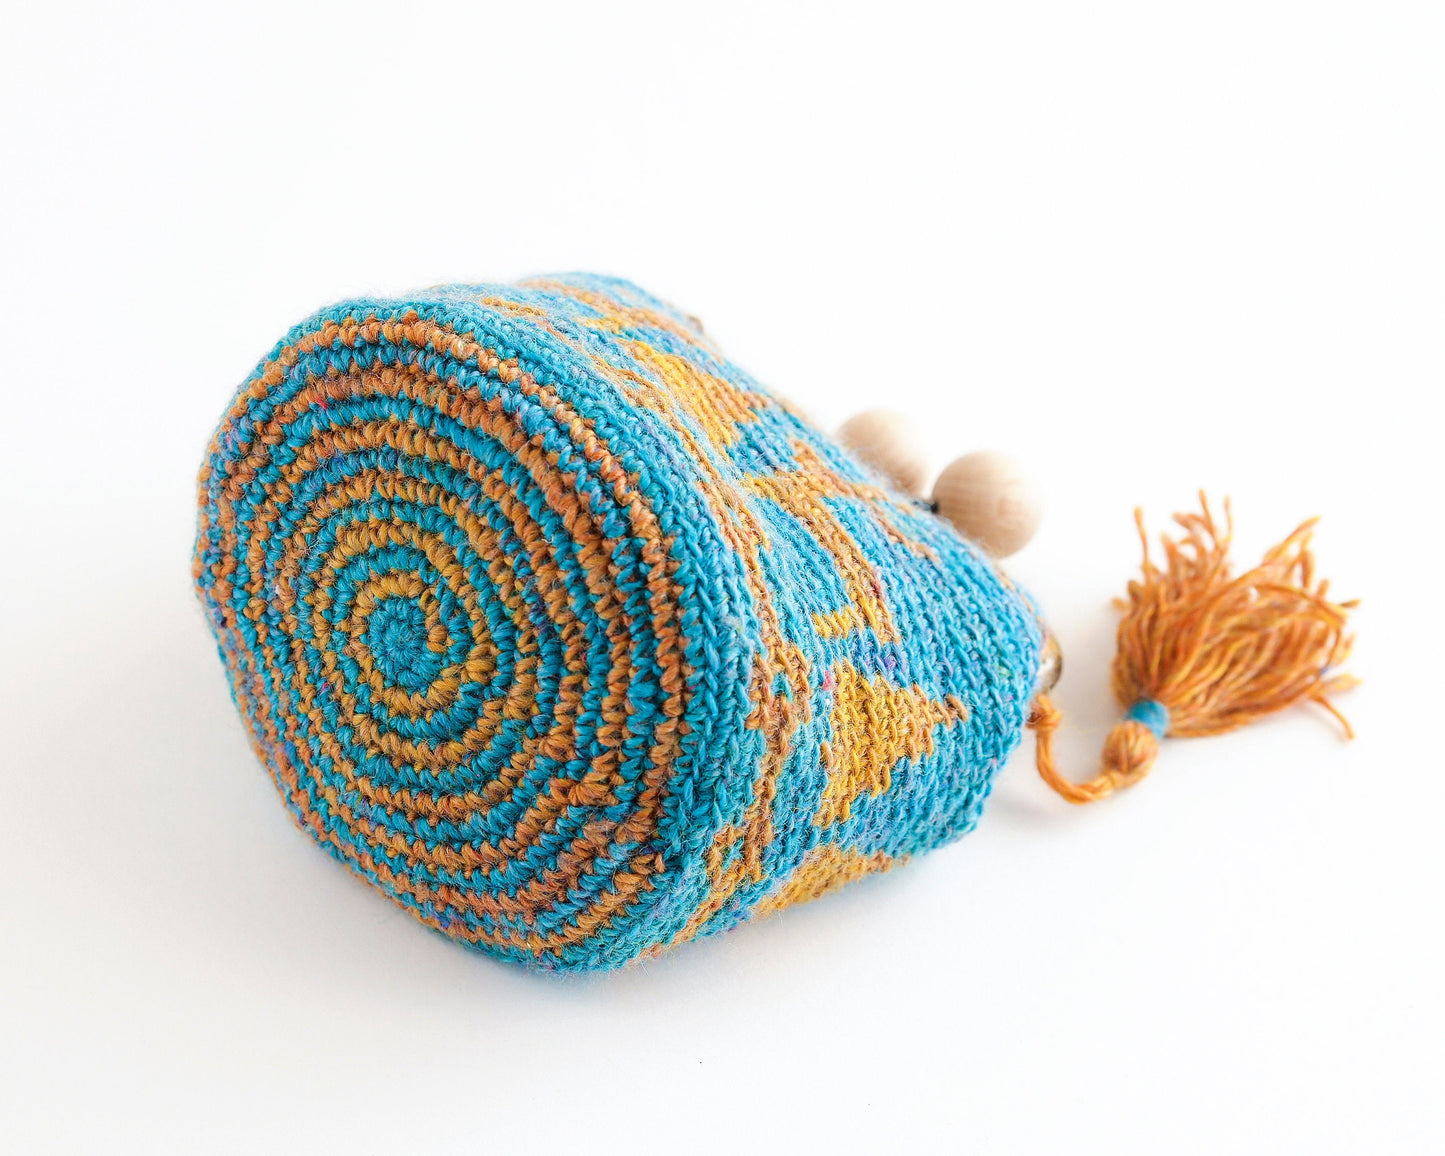 Patrón para hacer un monedero de crochet con cierre de boquilla metálica de diseño navideño en tapestry crochet, con dibujo de renos y árboles de navidad. Diseñado por Basimaker.